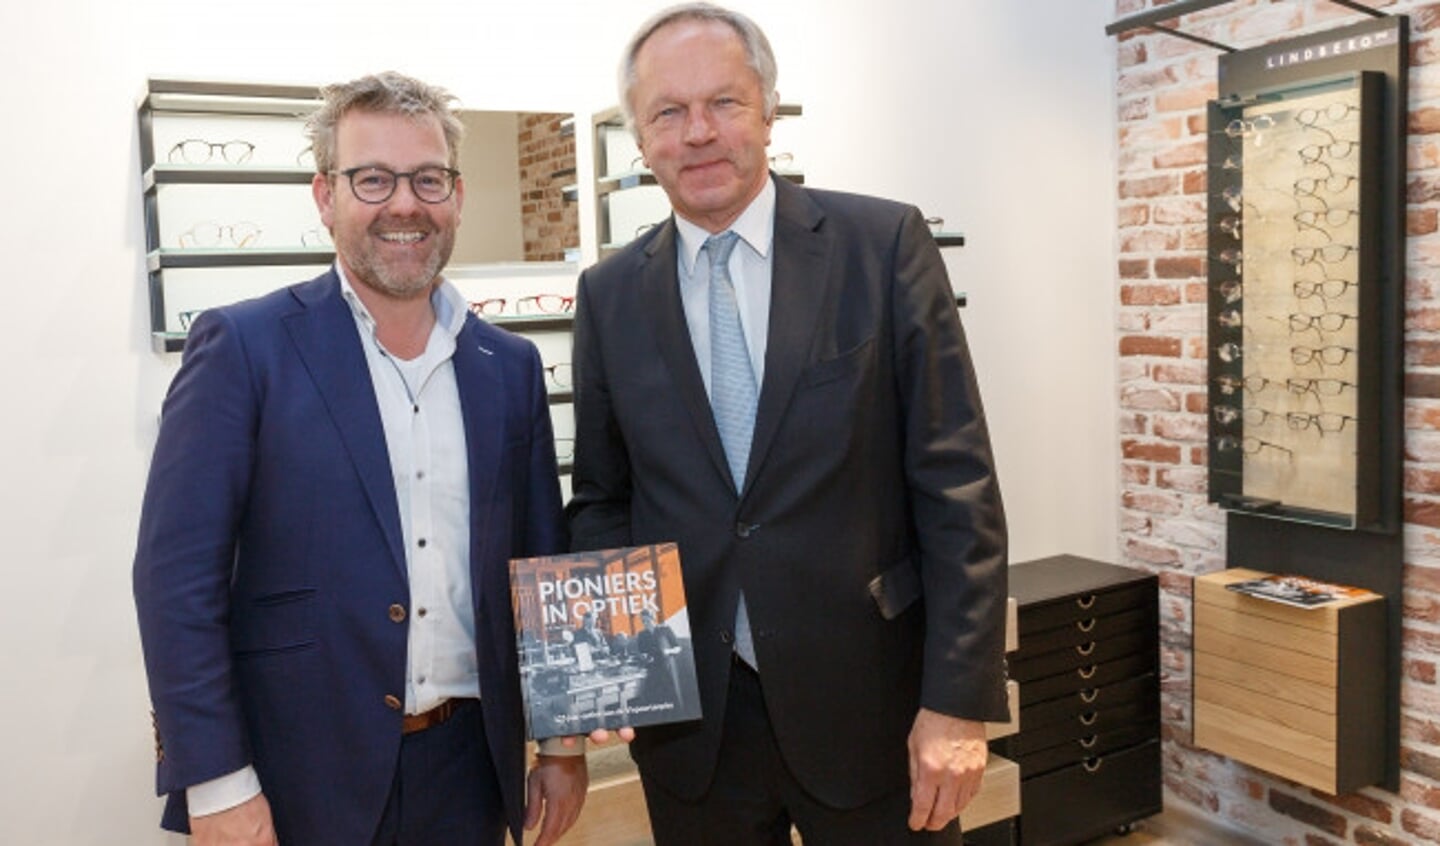  Burgemeester Henk Jan Meijer nam het eerste exemplaar in ontvangst uit handen van huidig eigenaar Arie van Vliet (l).